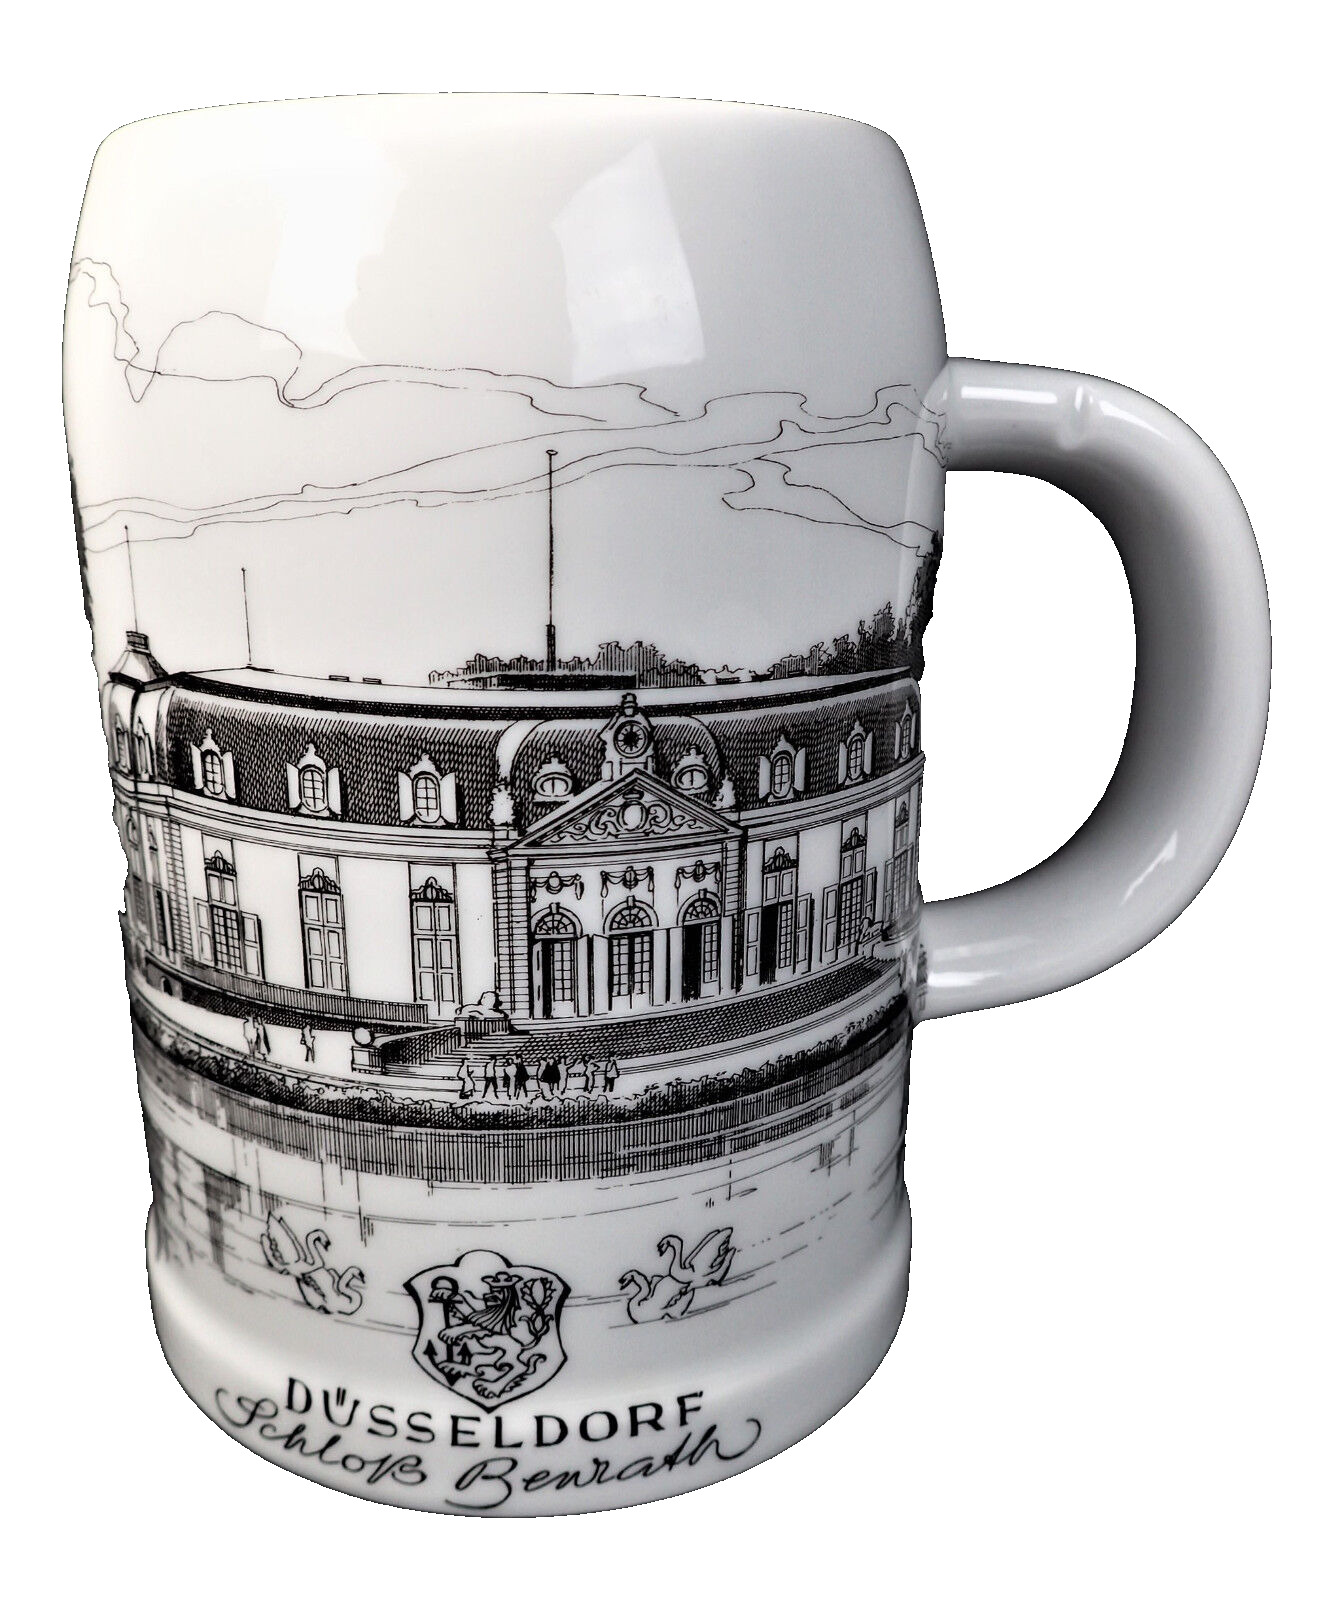 Düsseldorf Schloss Benrath Porcelain Stein Cup Mug GEGR 1849 UHLENHORST